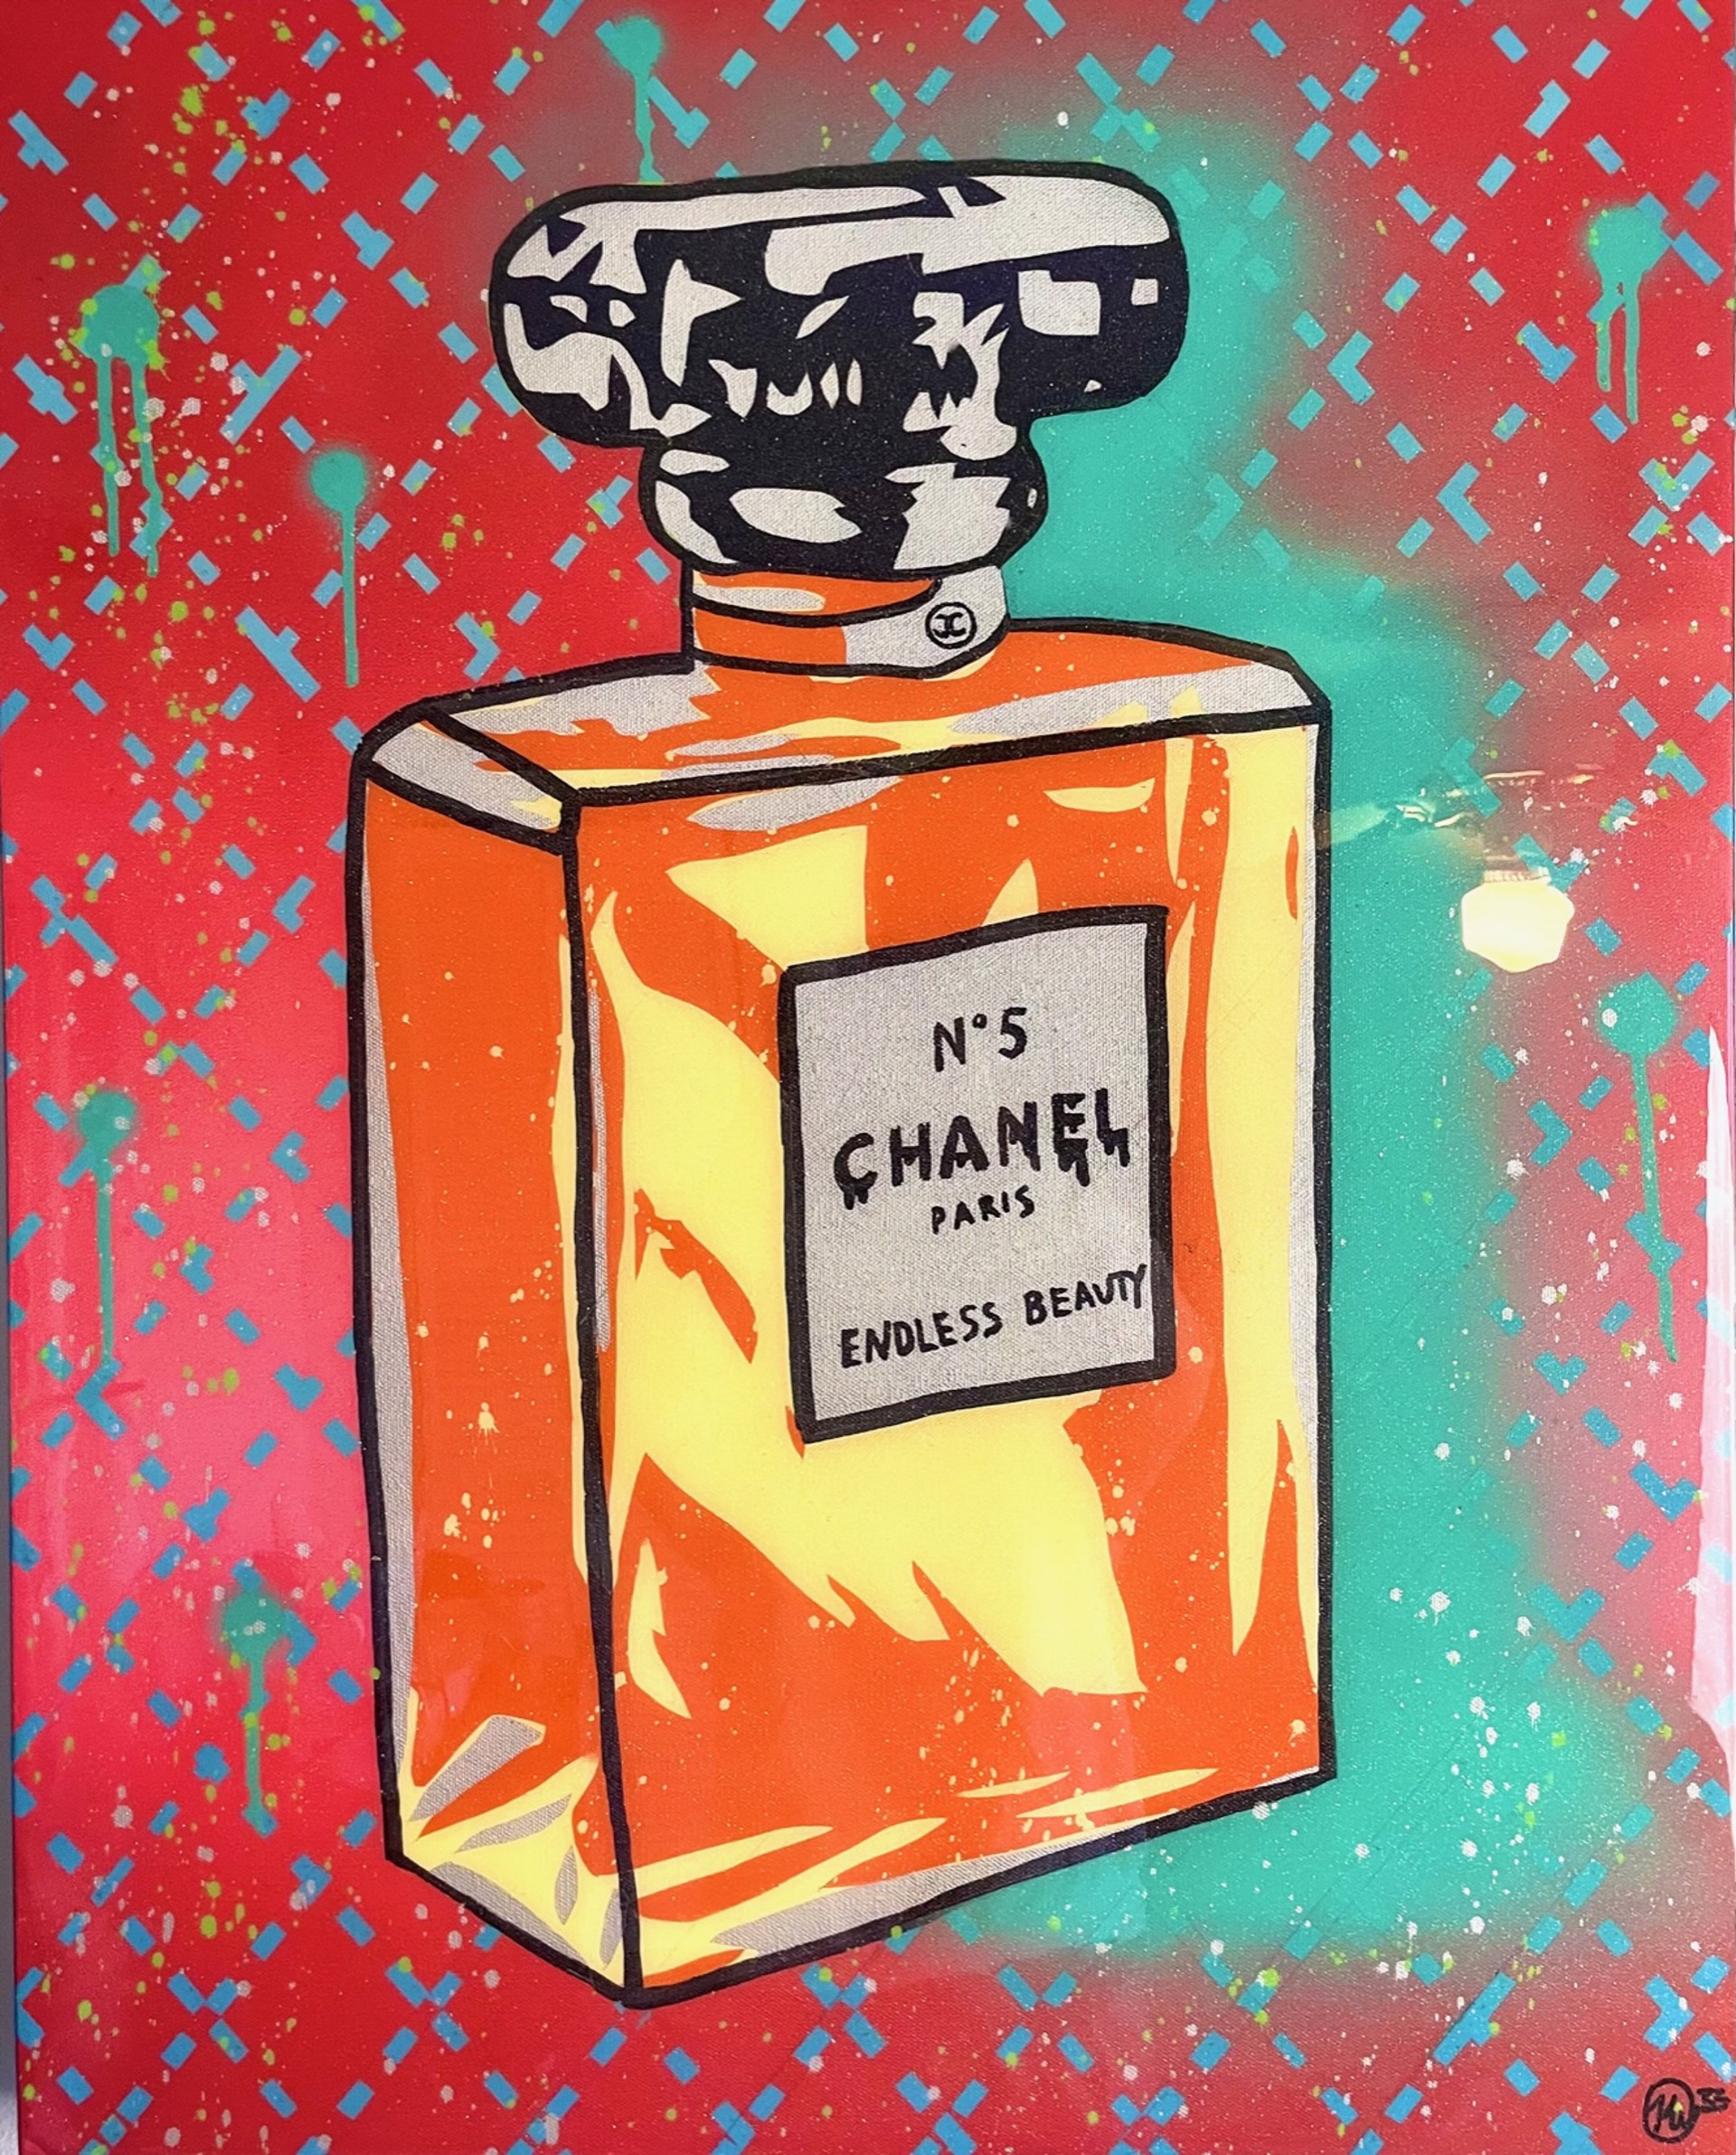 Chanel Beauty II by Kyle Wallack